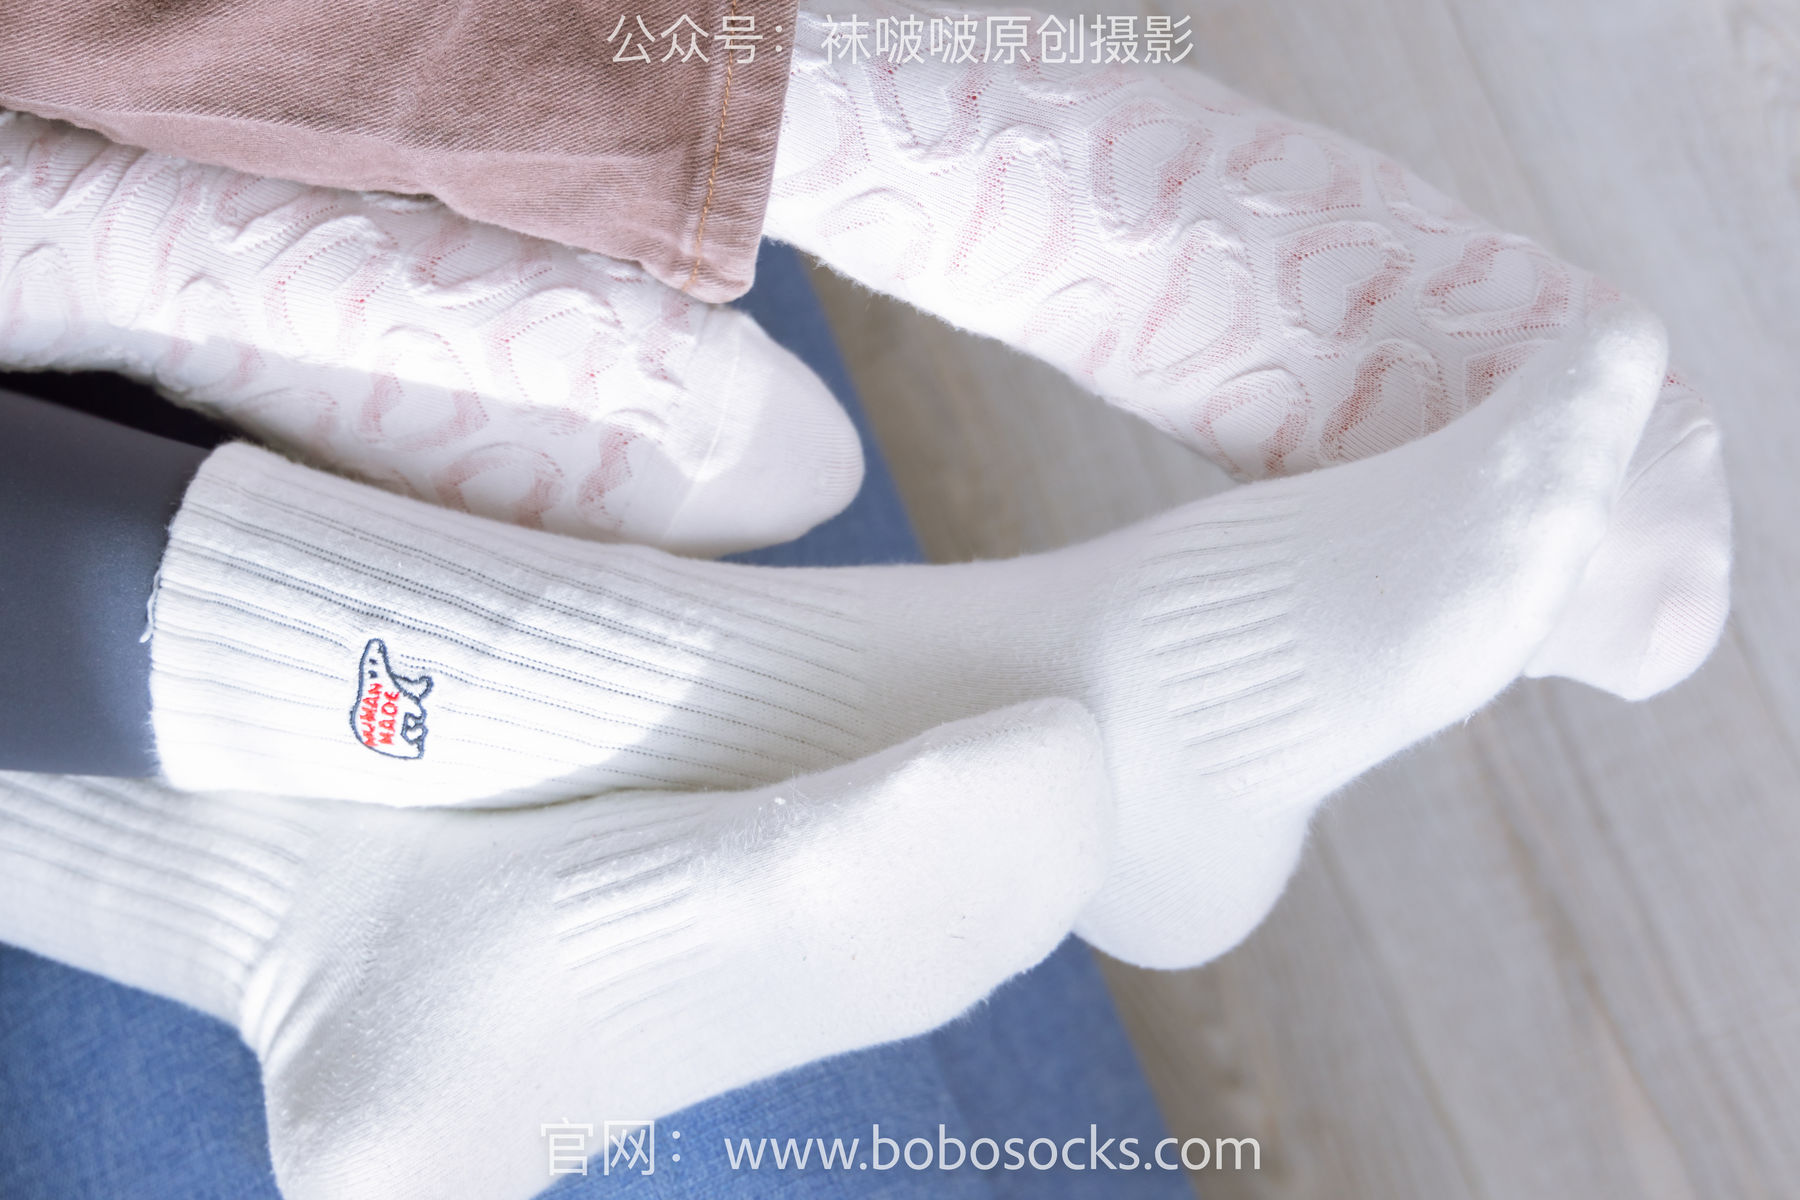 BoBoSocks袜啵啵 No.166 小甜豆稚予-板鞋、运动鞋、高跟鞋、白棉袜、蓝丝/(218P)